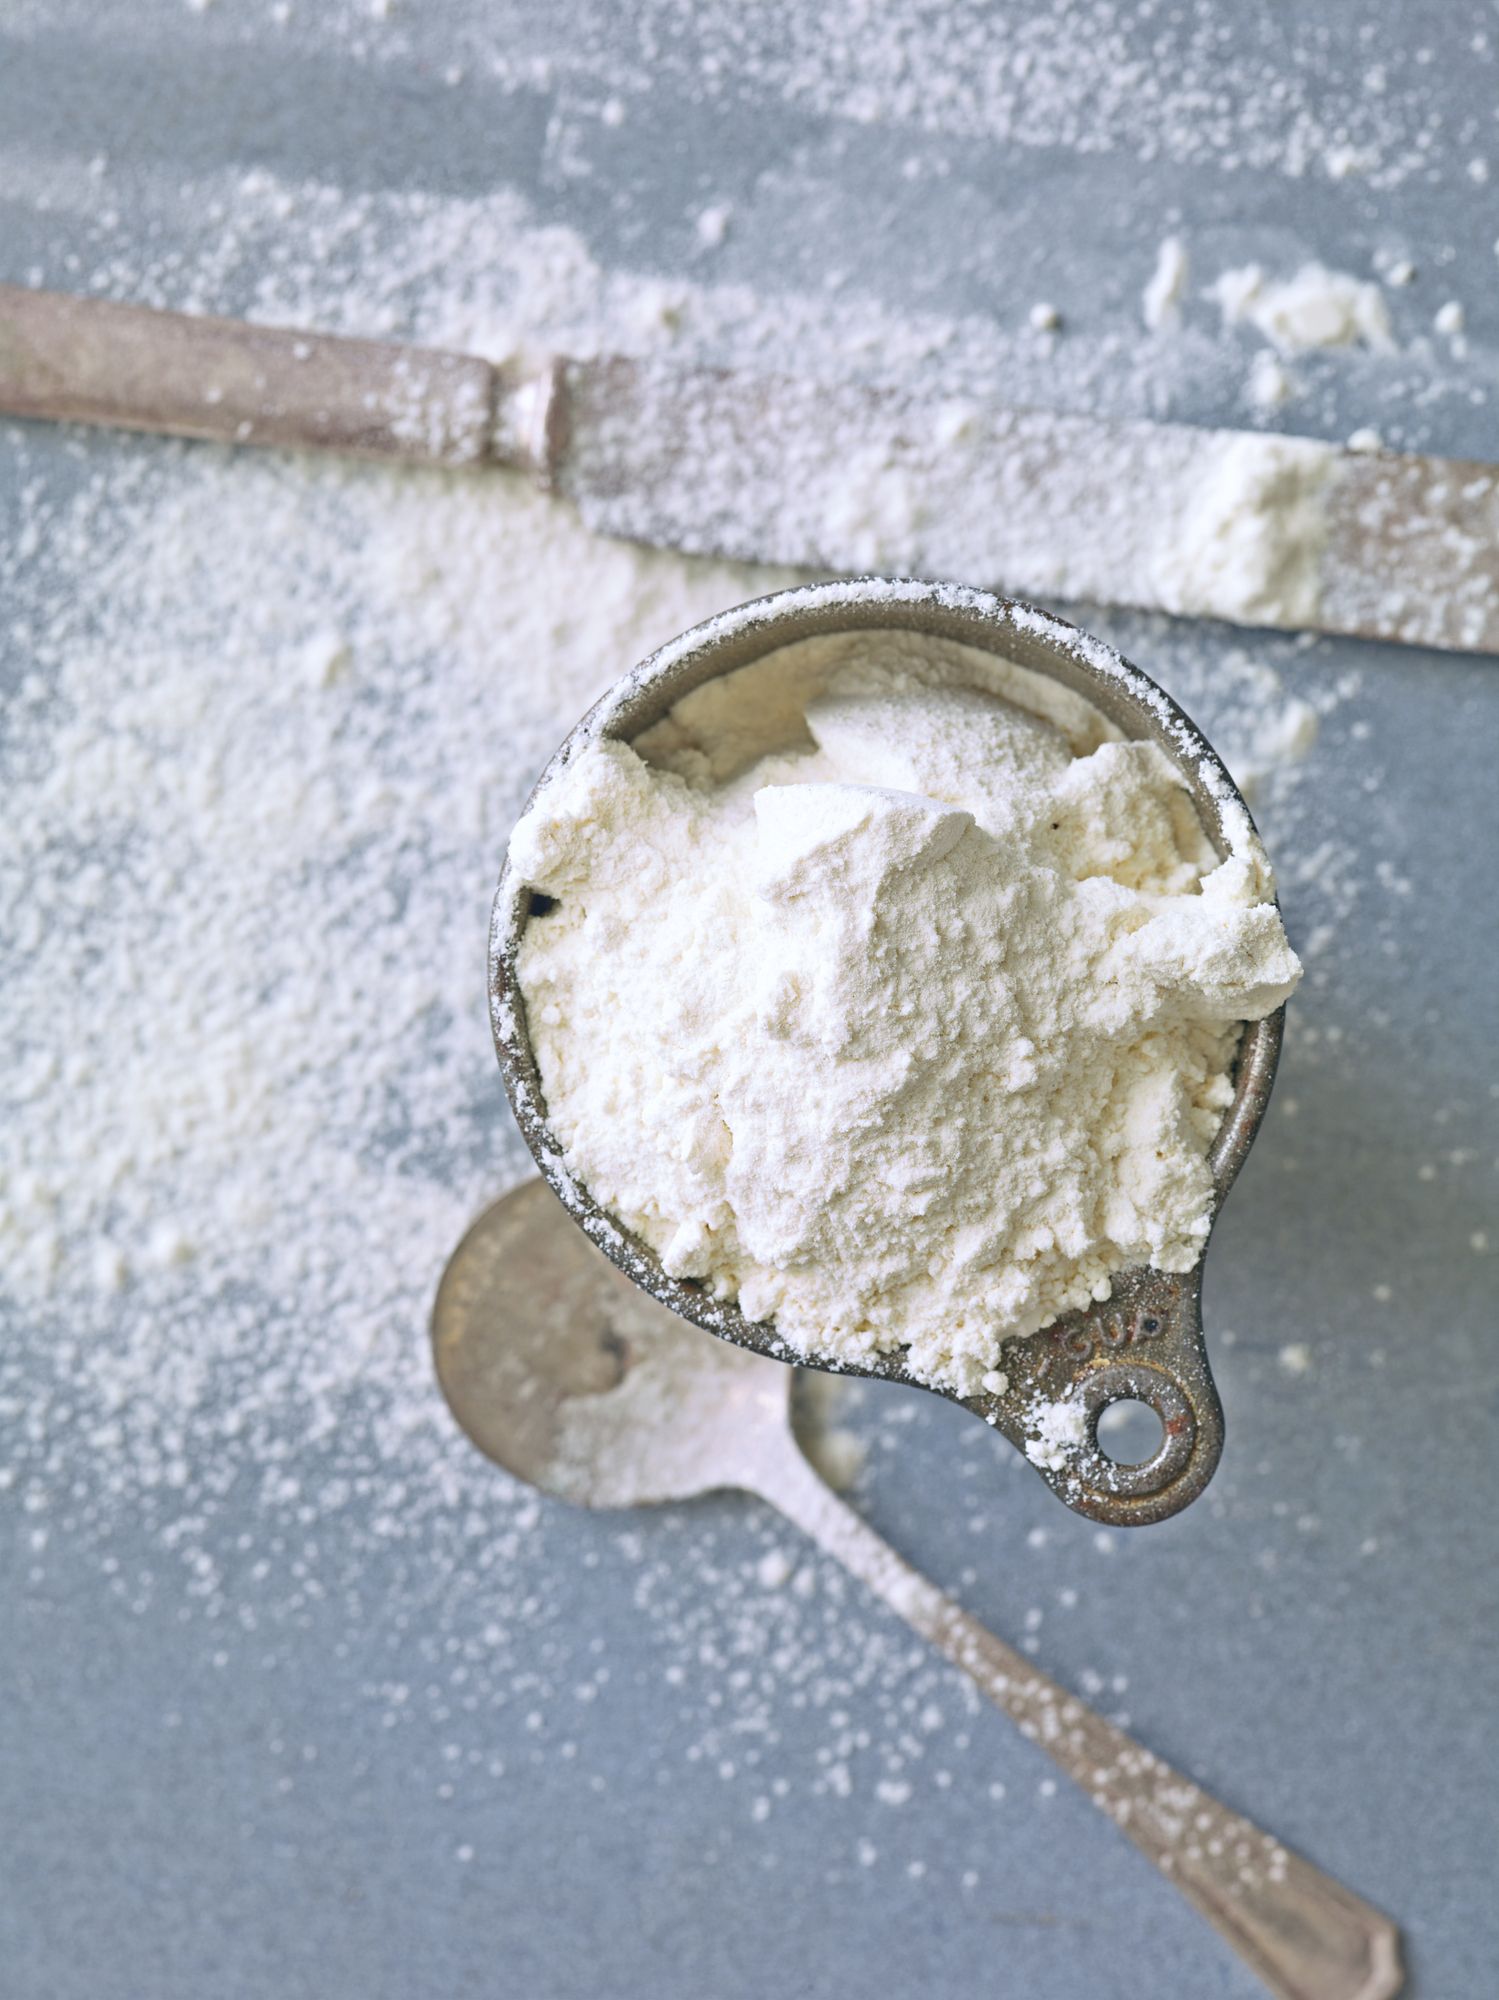 Does Flour Go Bad? Flour Shelf Life, Storage, And Expiration Info